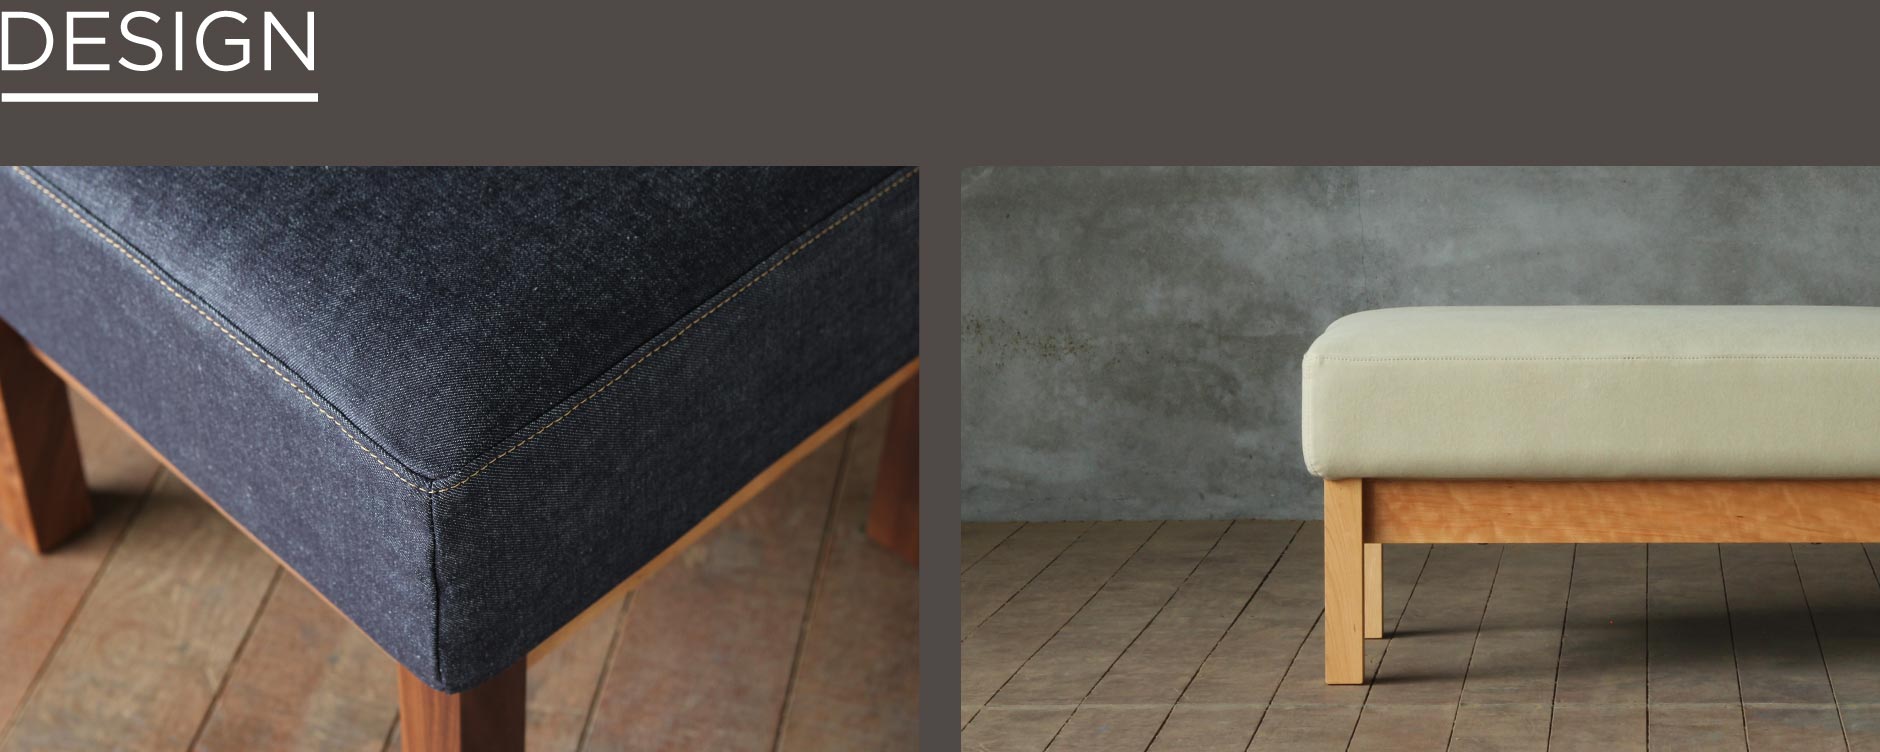 直線的でシンプルなフォルム。高さオーダー可能でどの家具にもイメージが合わせやすい。SOLID横浜でも人気の万能型オットマンです。